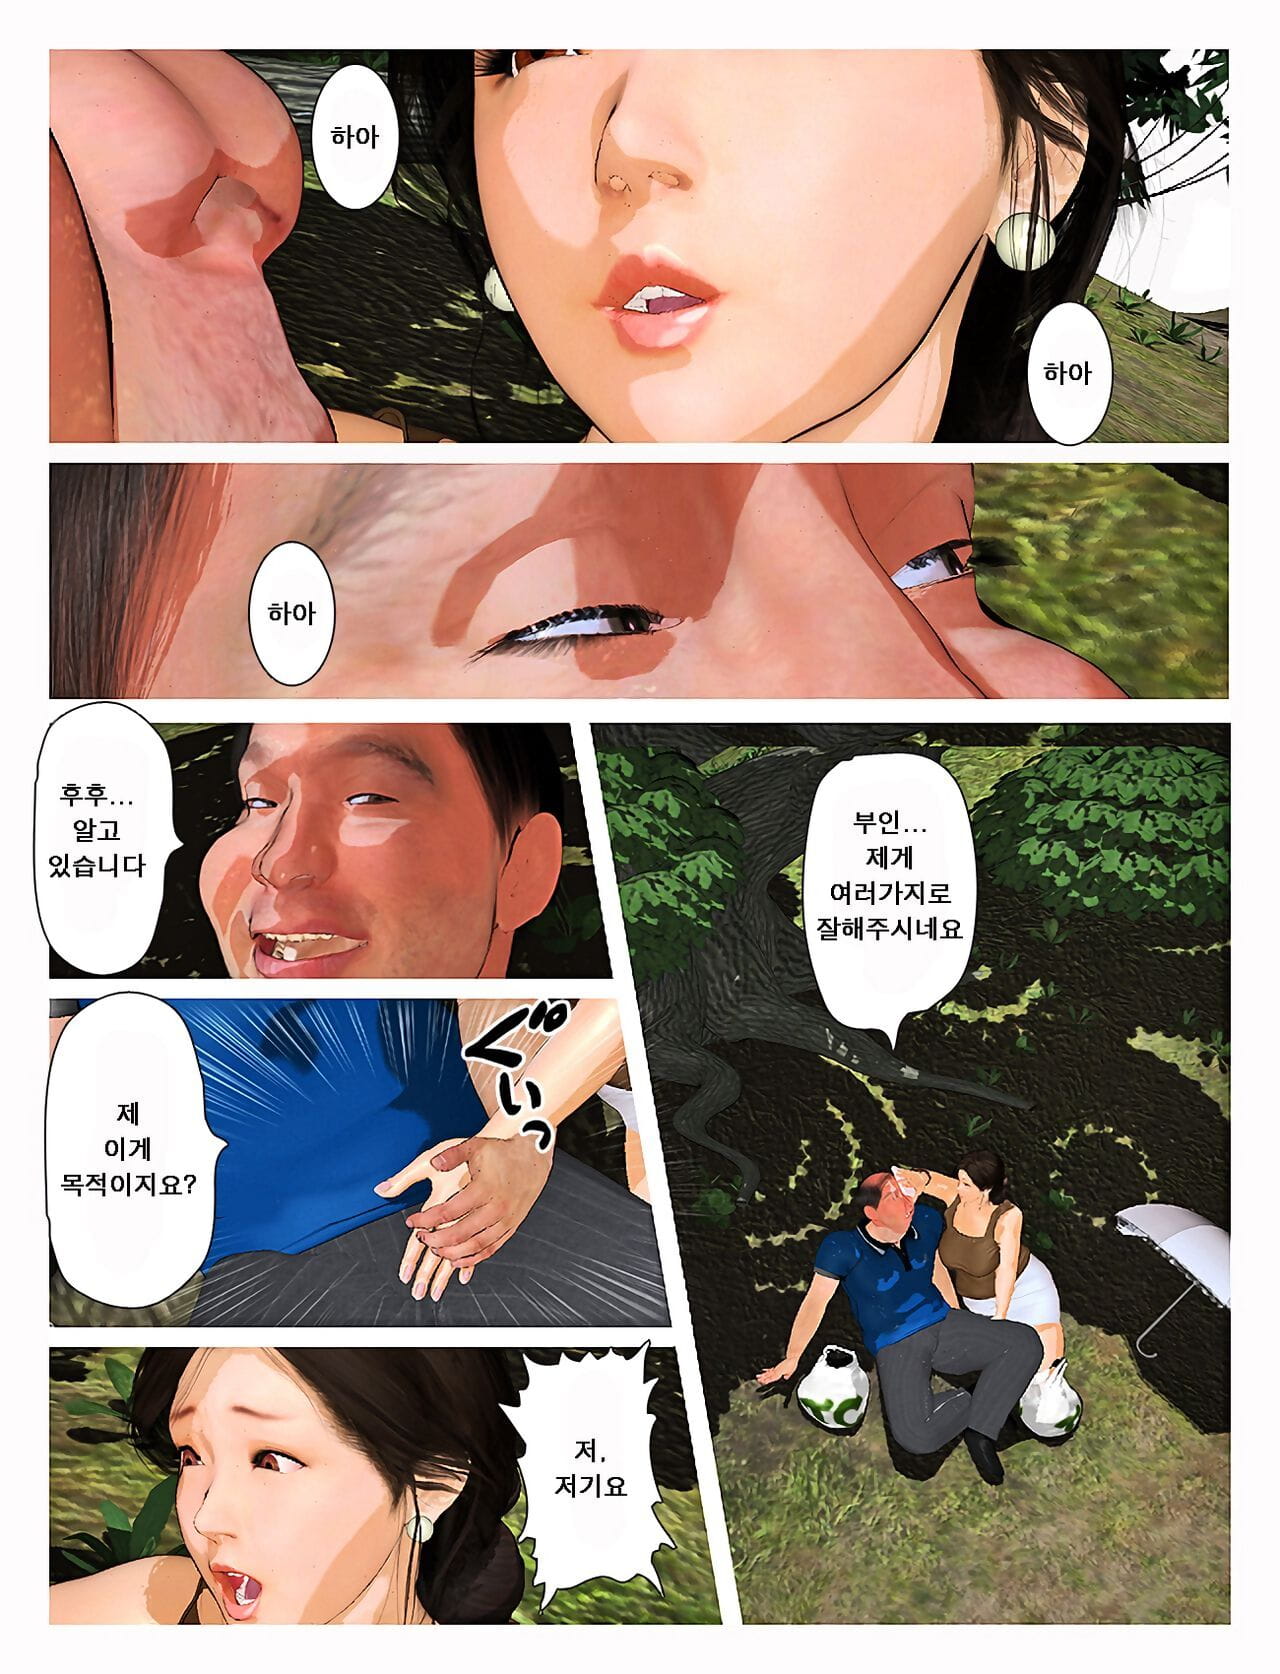 Kyou no misako San 2019:2 오늘의 미사코씨 2019:2 page 1